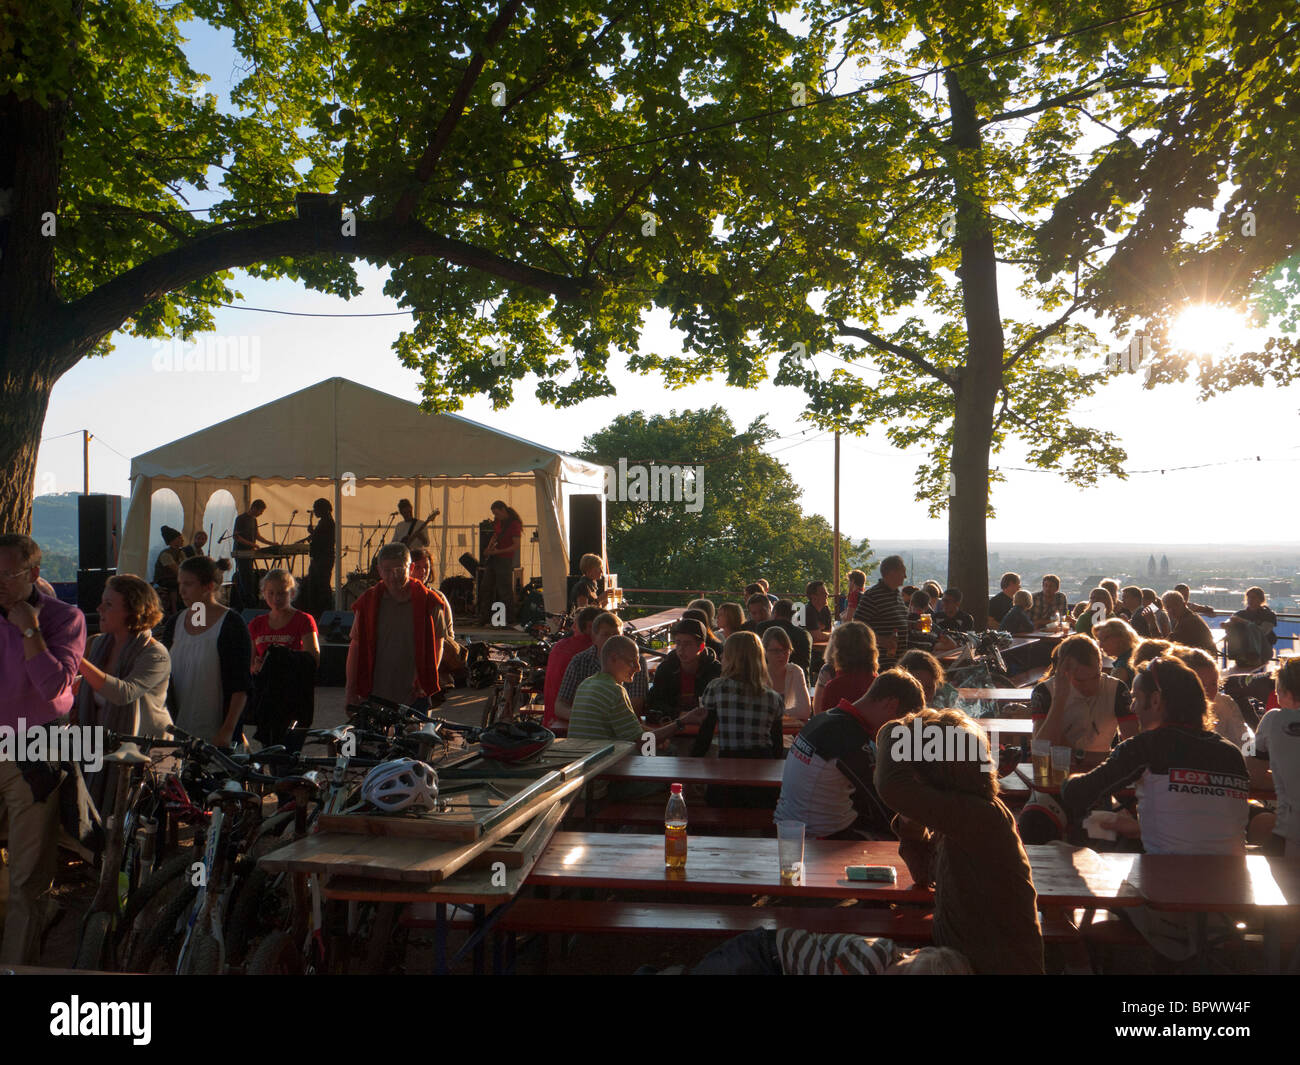 Seduti al sole di sera, i visitatori di Friburgo Schlossberg festival in Germania Meridionale per ascoltare un gruppo musicale. Foto Stock